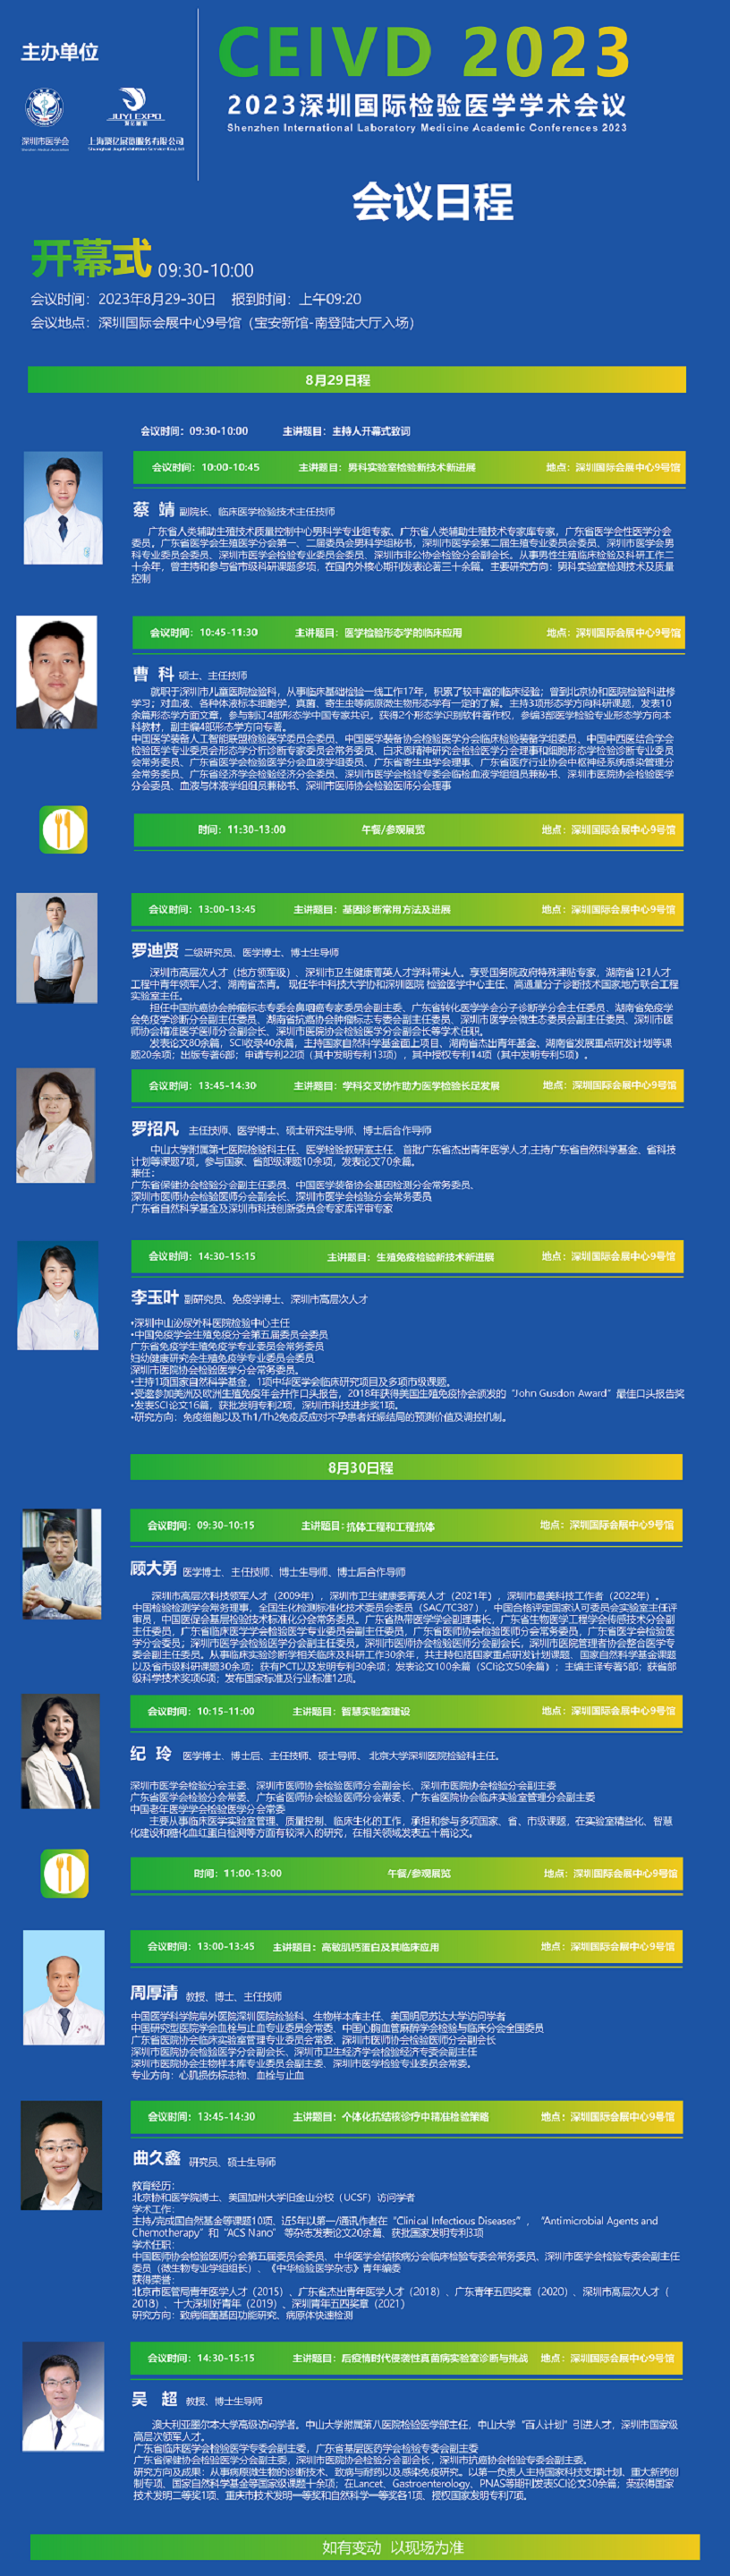 CEIVD2023深圳国际检验医学学术会议日程（部分）